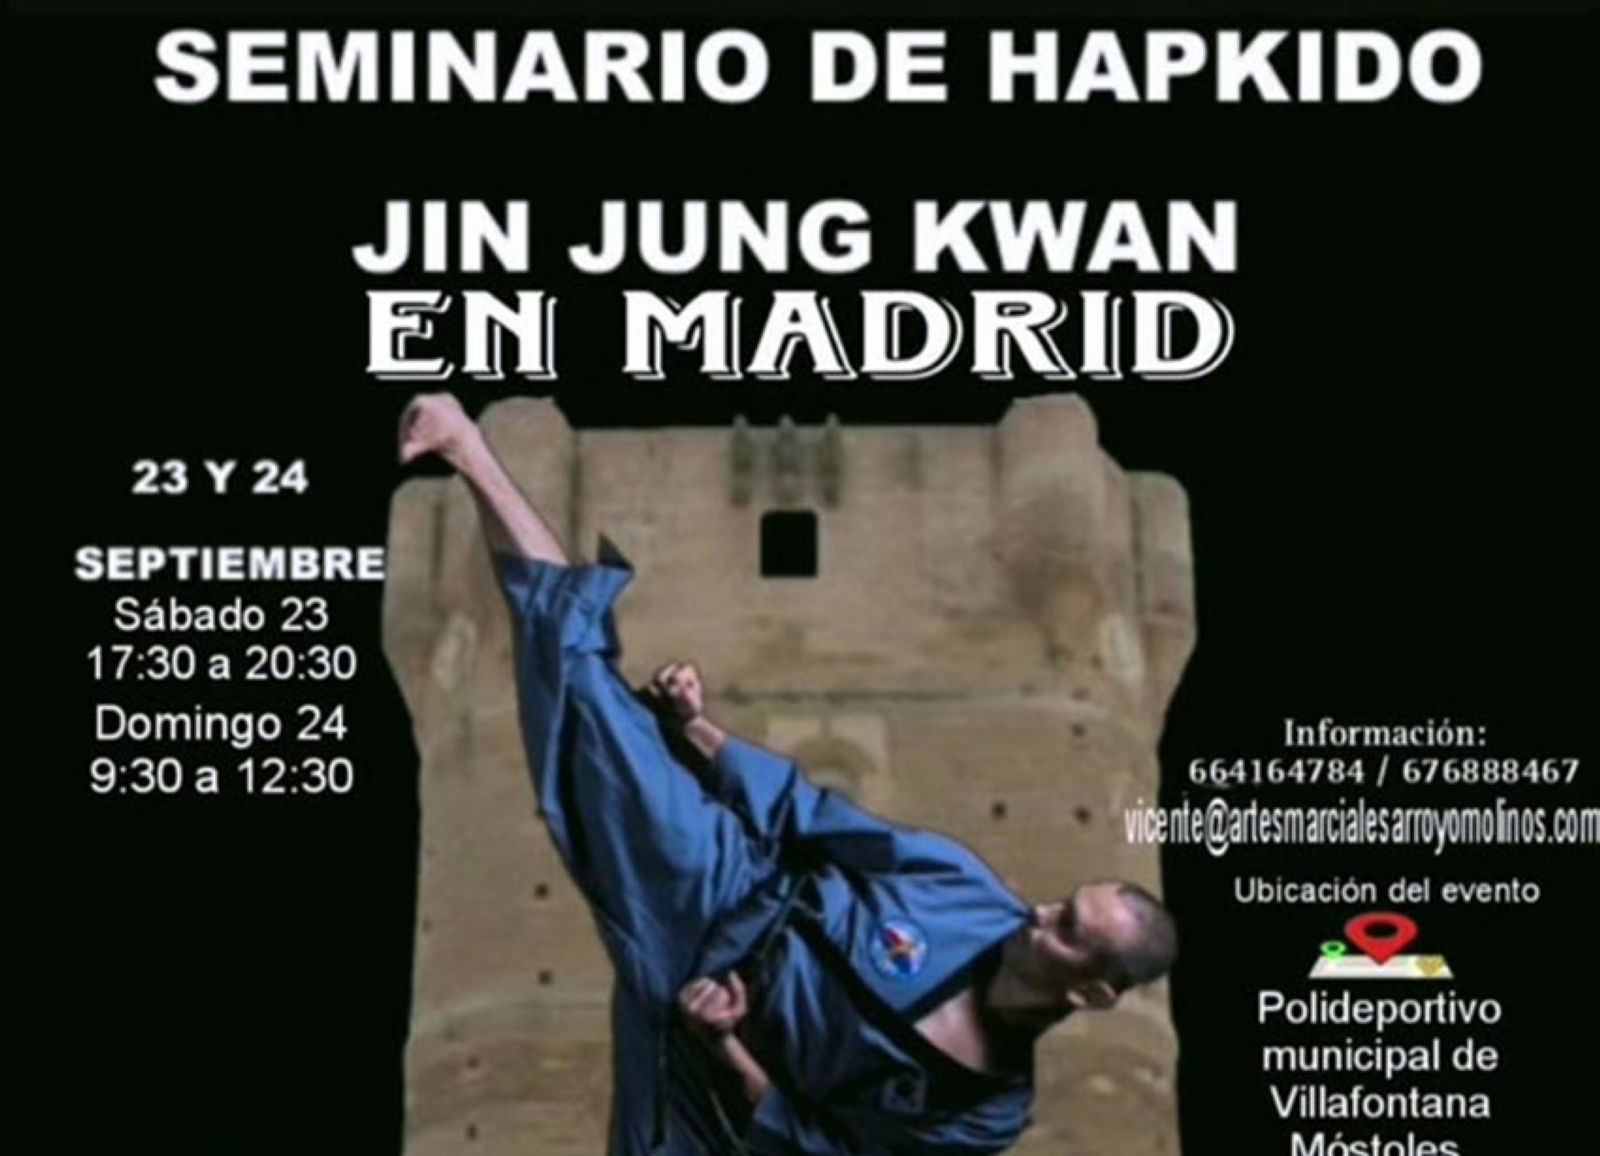 Seminario de Hapkido en Madrid